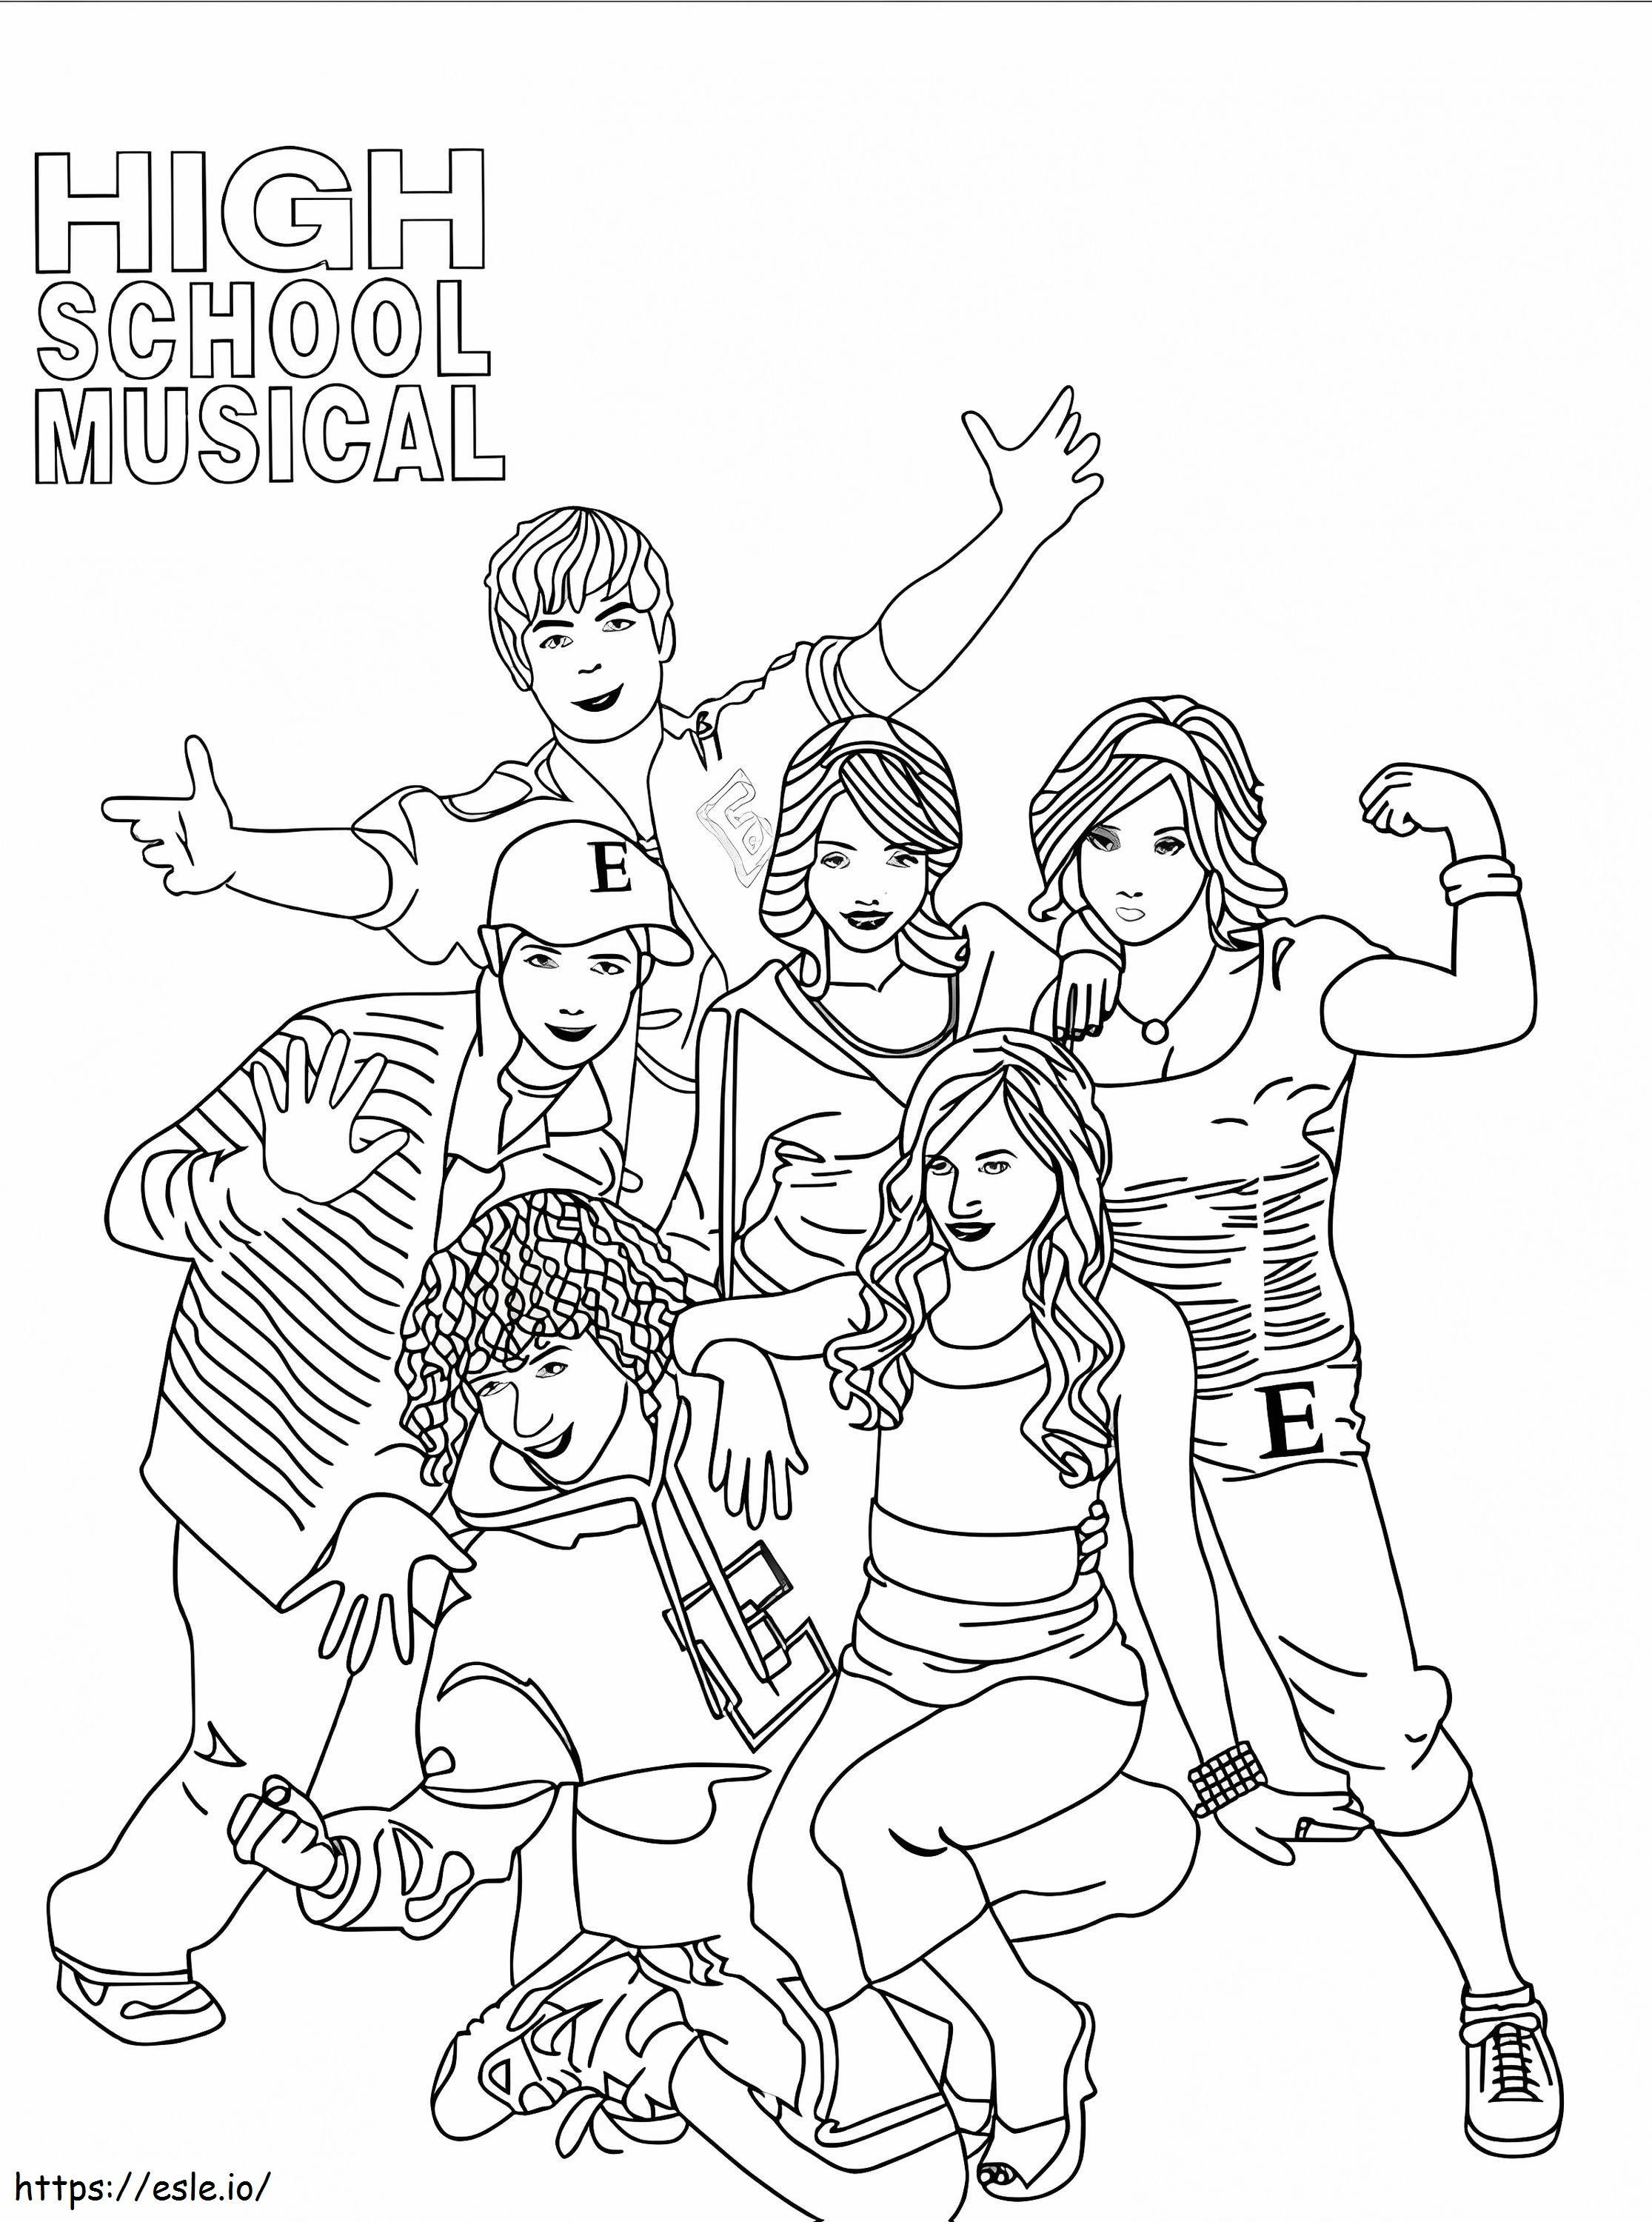 Personaggi di High School Musical da colorare